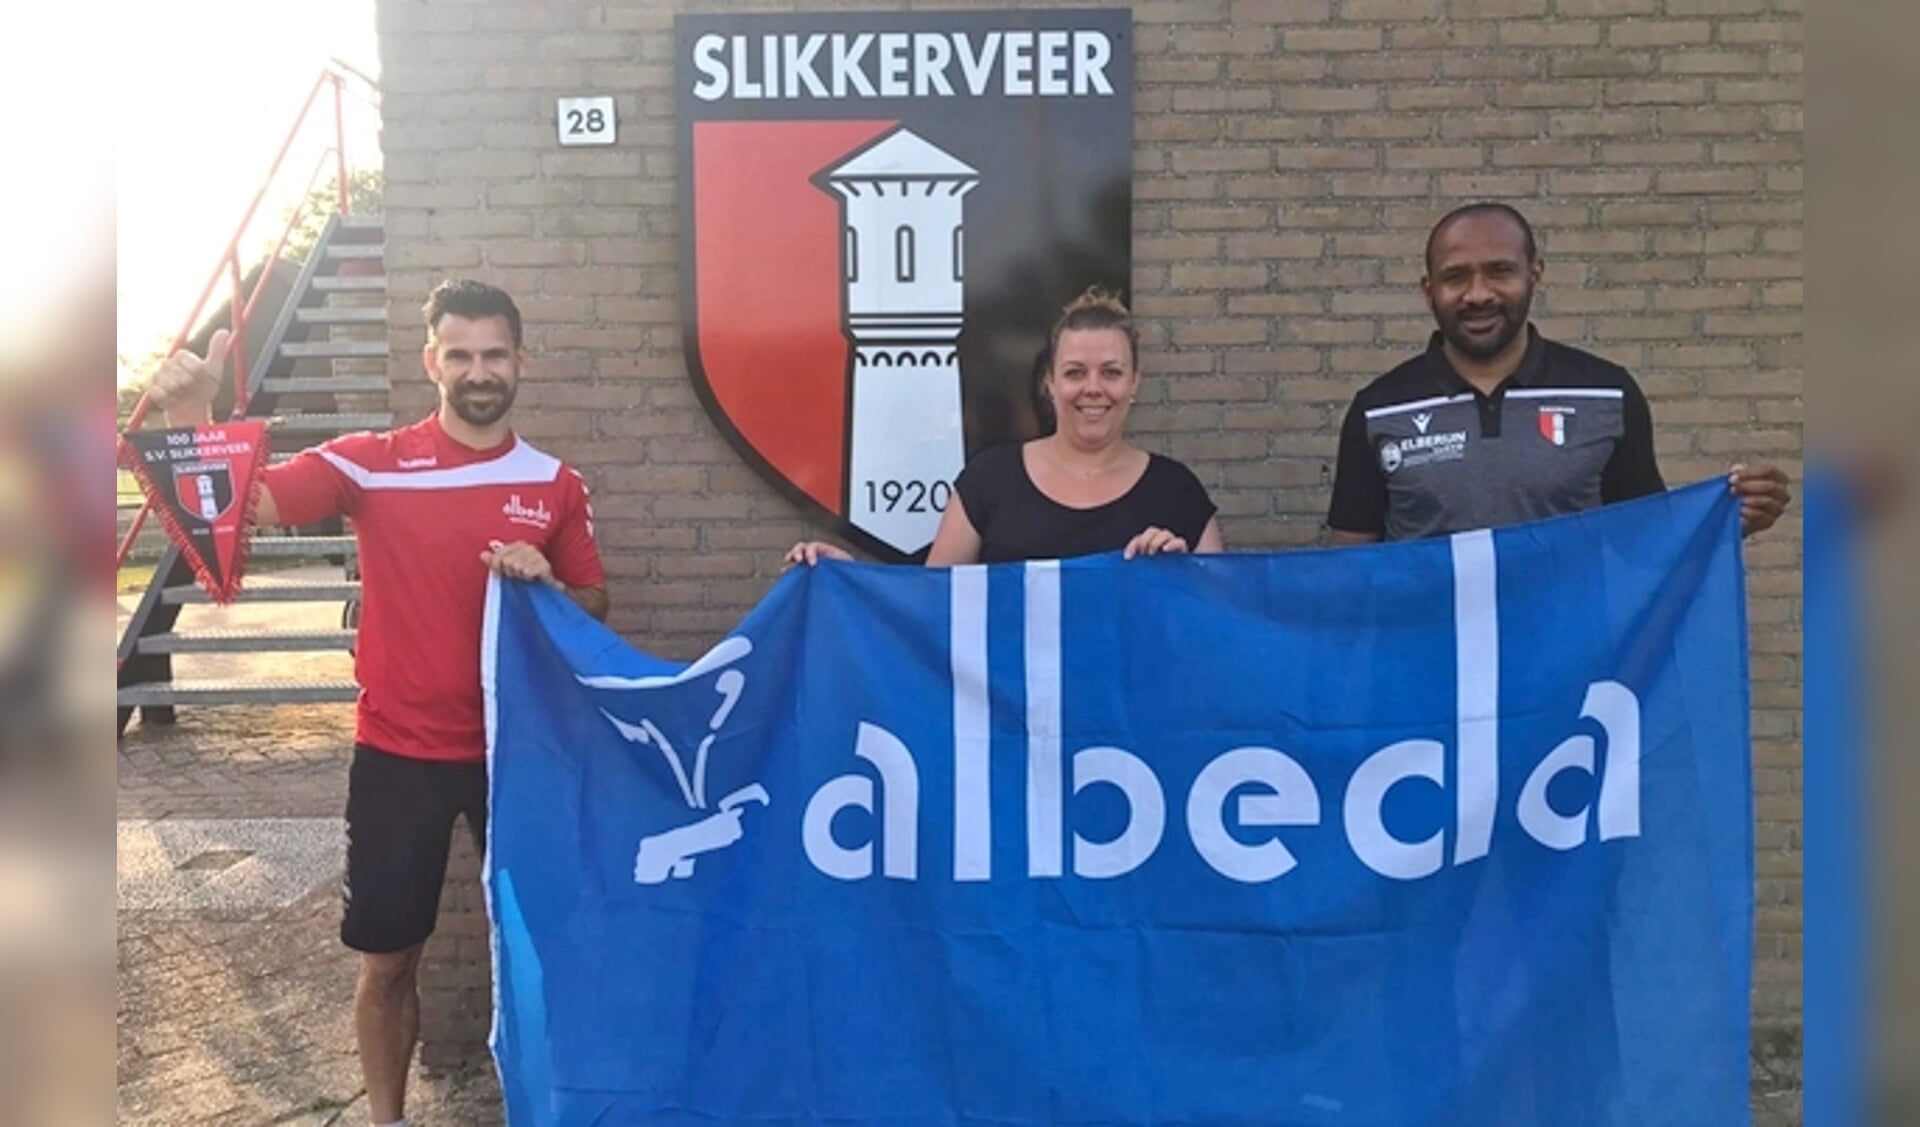 v.l.n.r.: Dennis Zijlmans van het Albeda Sportcollege, Frida Neeskens namens de Jeugdcommissie van SV Slikkerveer en Cerezo Fung-A-Wing, Hoofd Jeugdopleiding van SV Slikkerveer.